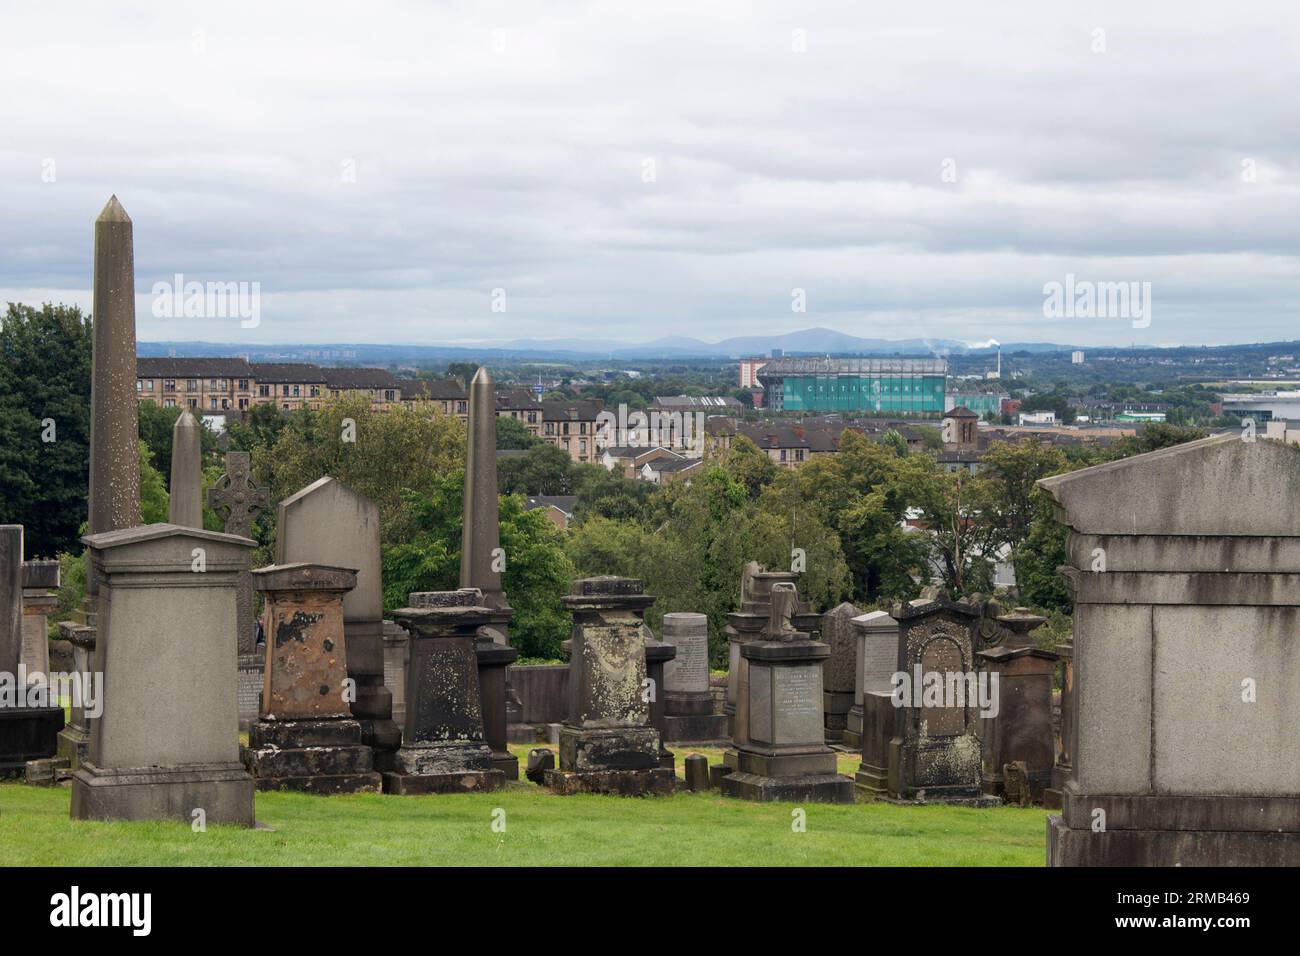 La nécropole de Glasgow et la campagne environnante, un cimetière victorien à Glasgow, en Écosse Banque D'Images